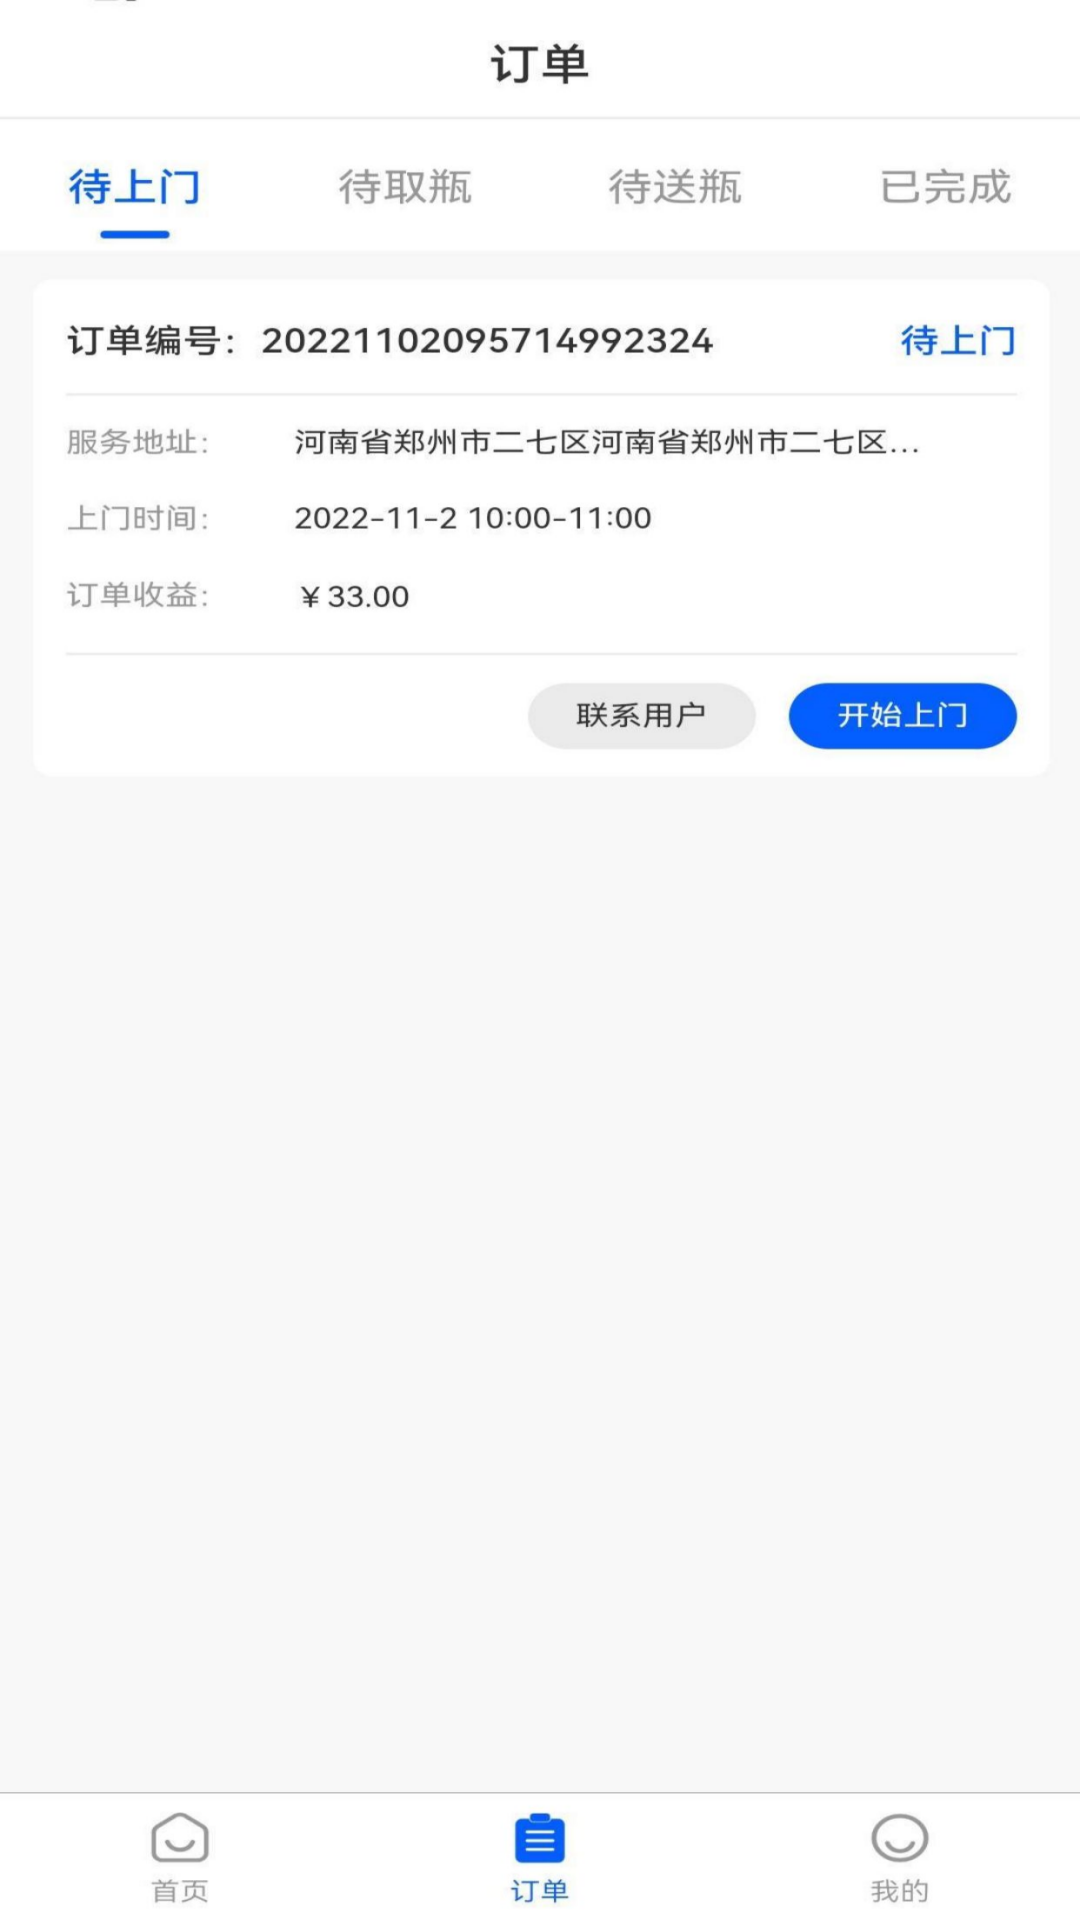 燃气宝师傅端app下载,燃气宝师傅端app官方版 v2.0.4